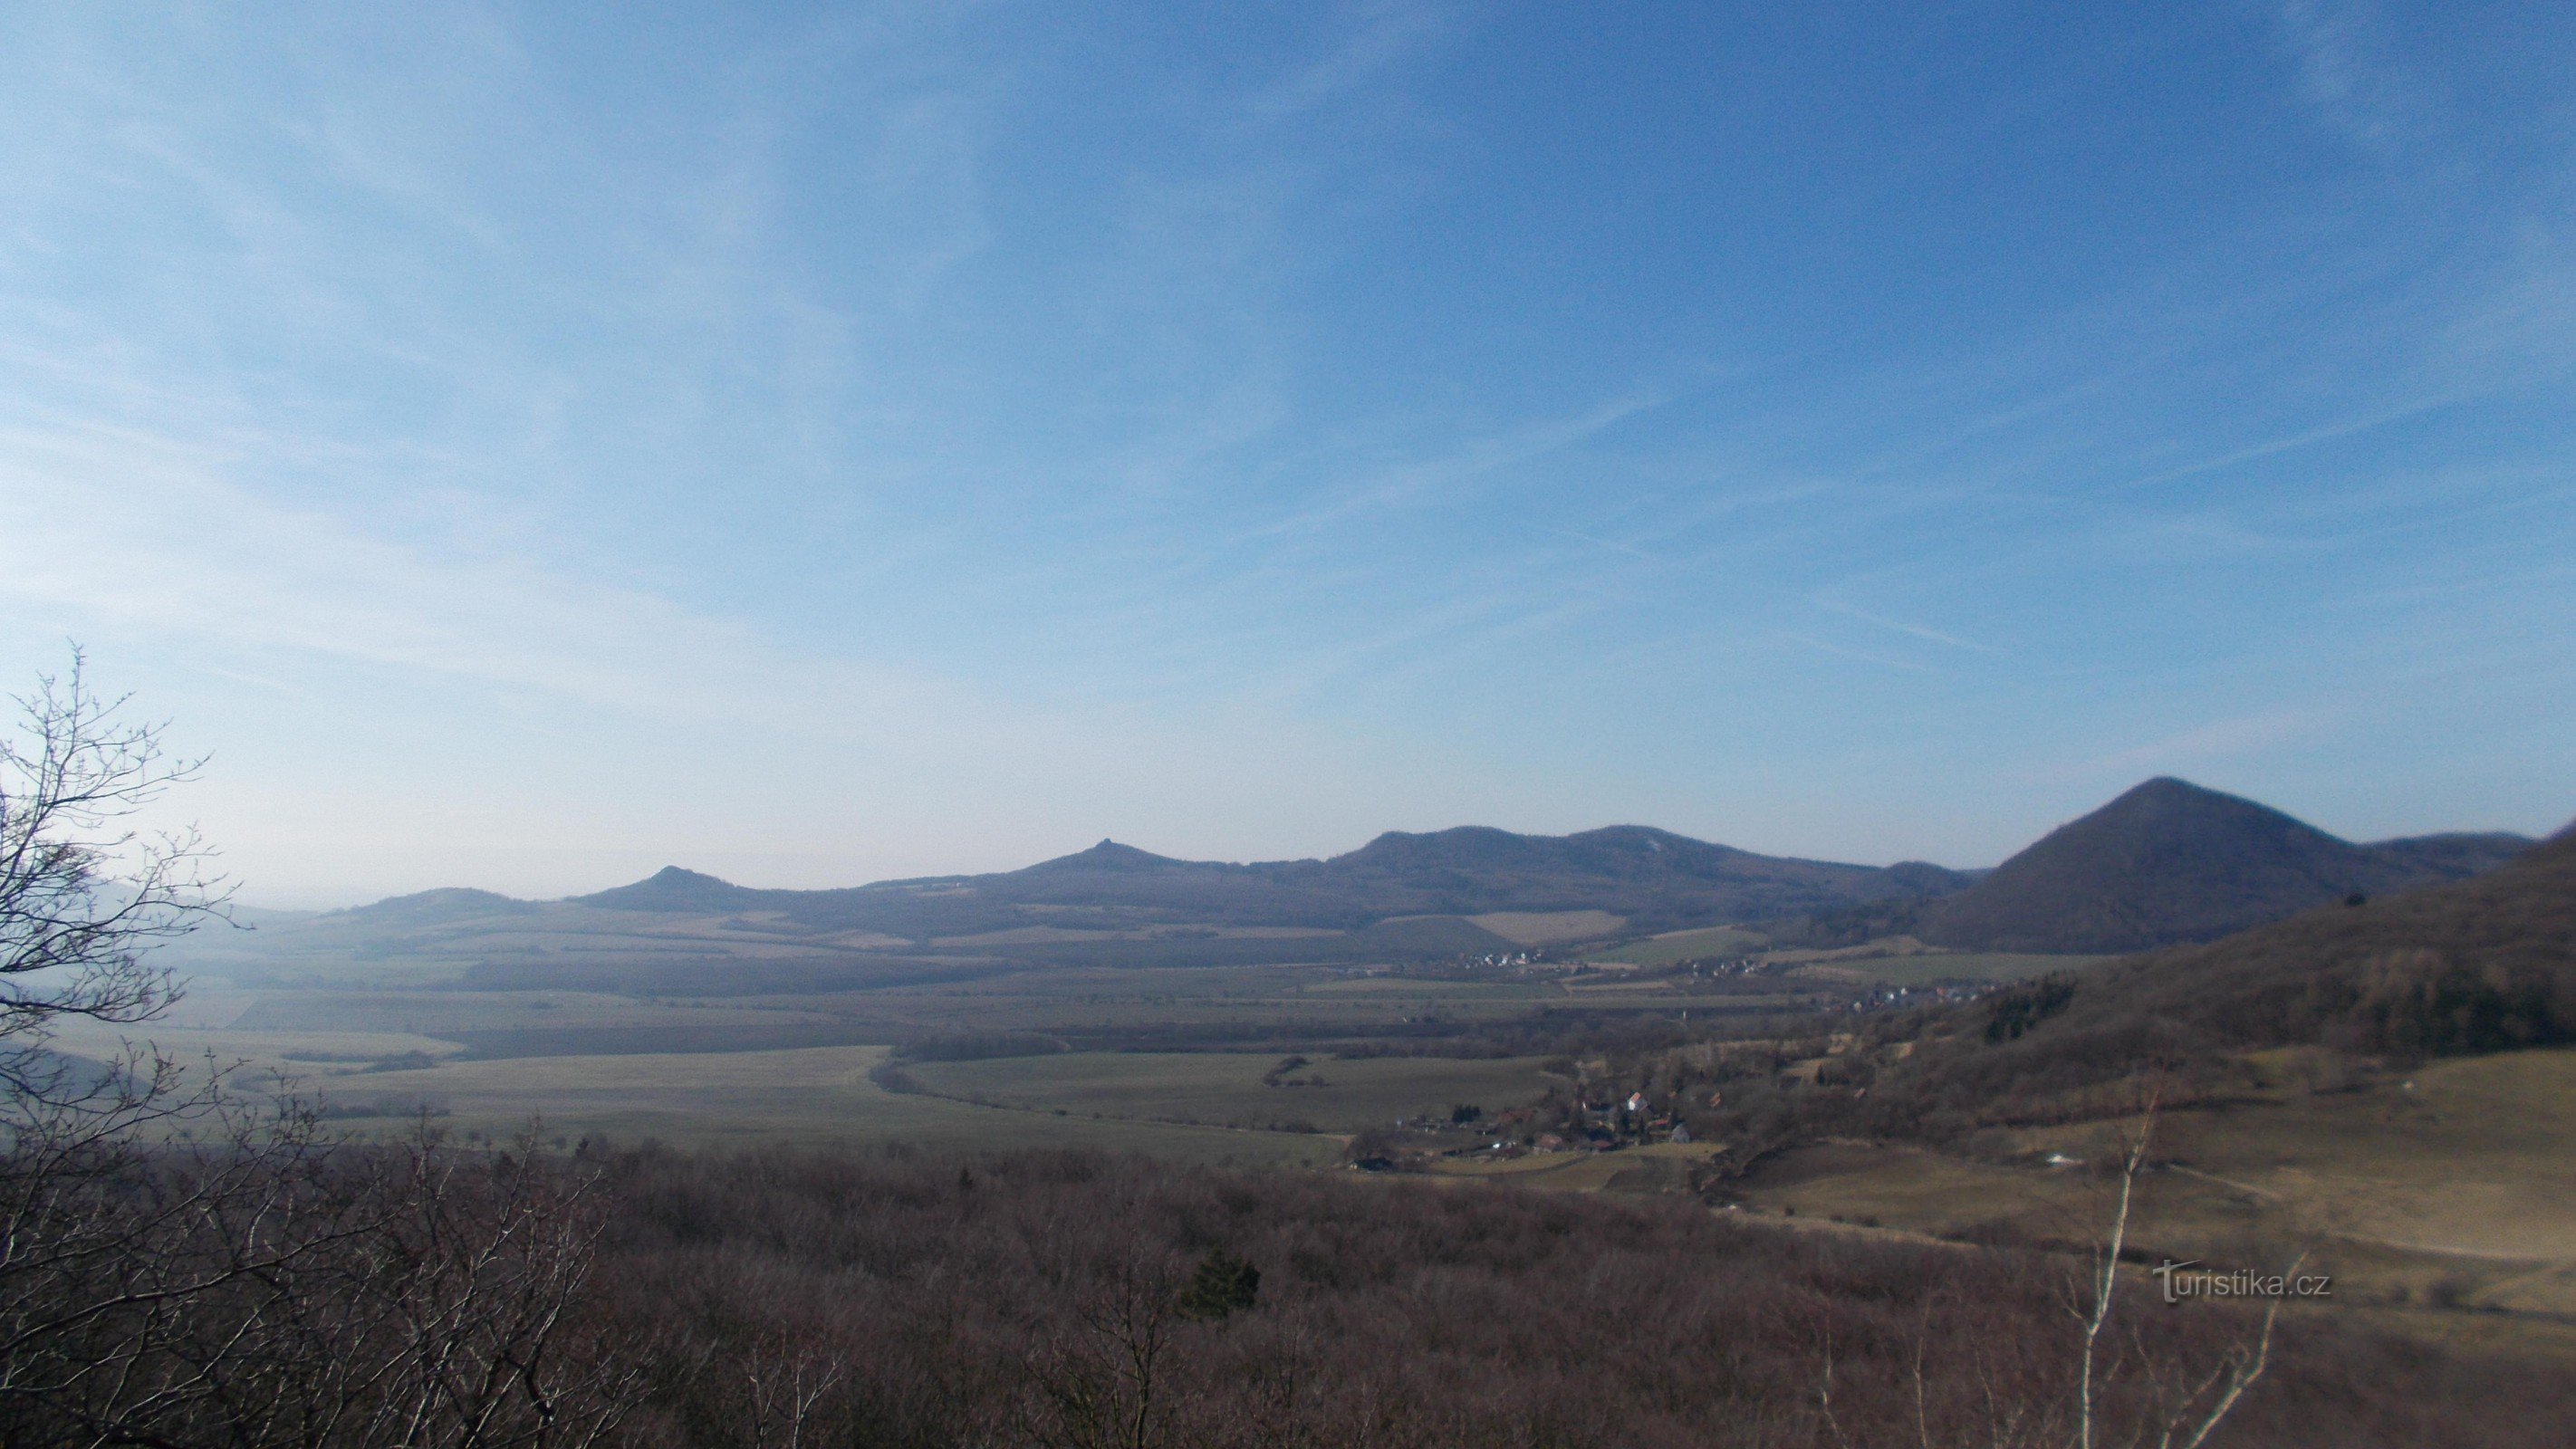 La parte sud-occidentale delle montagne boeme centrali vista da Ostrý.